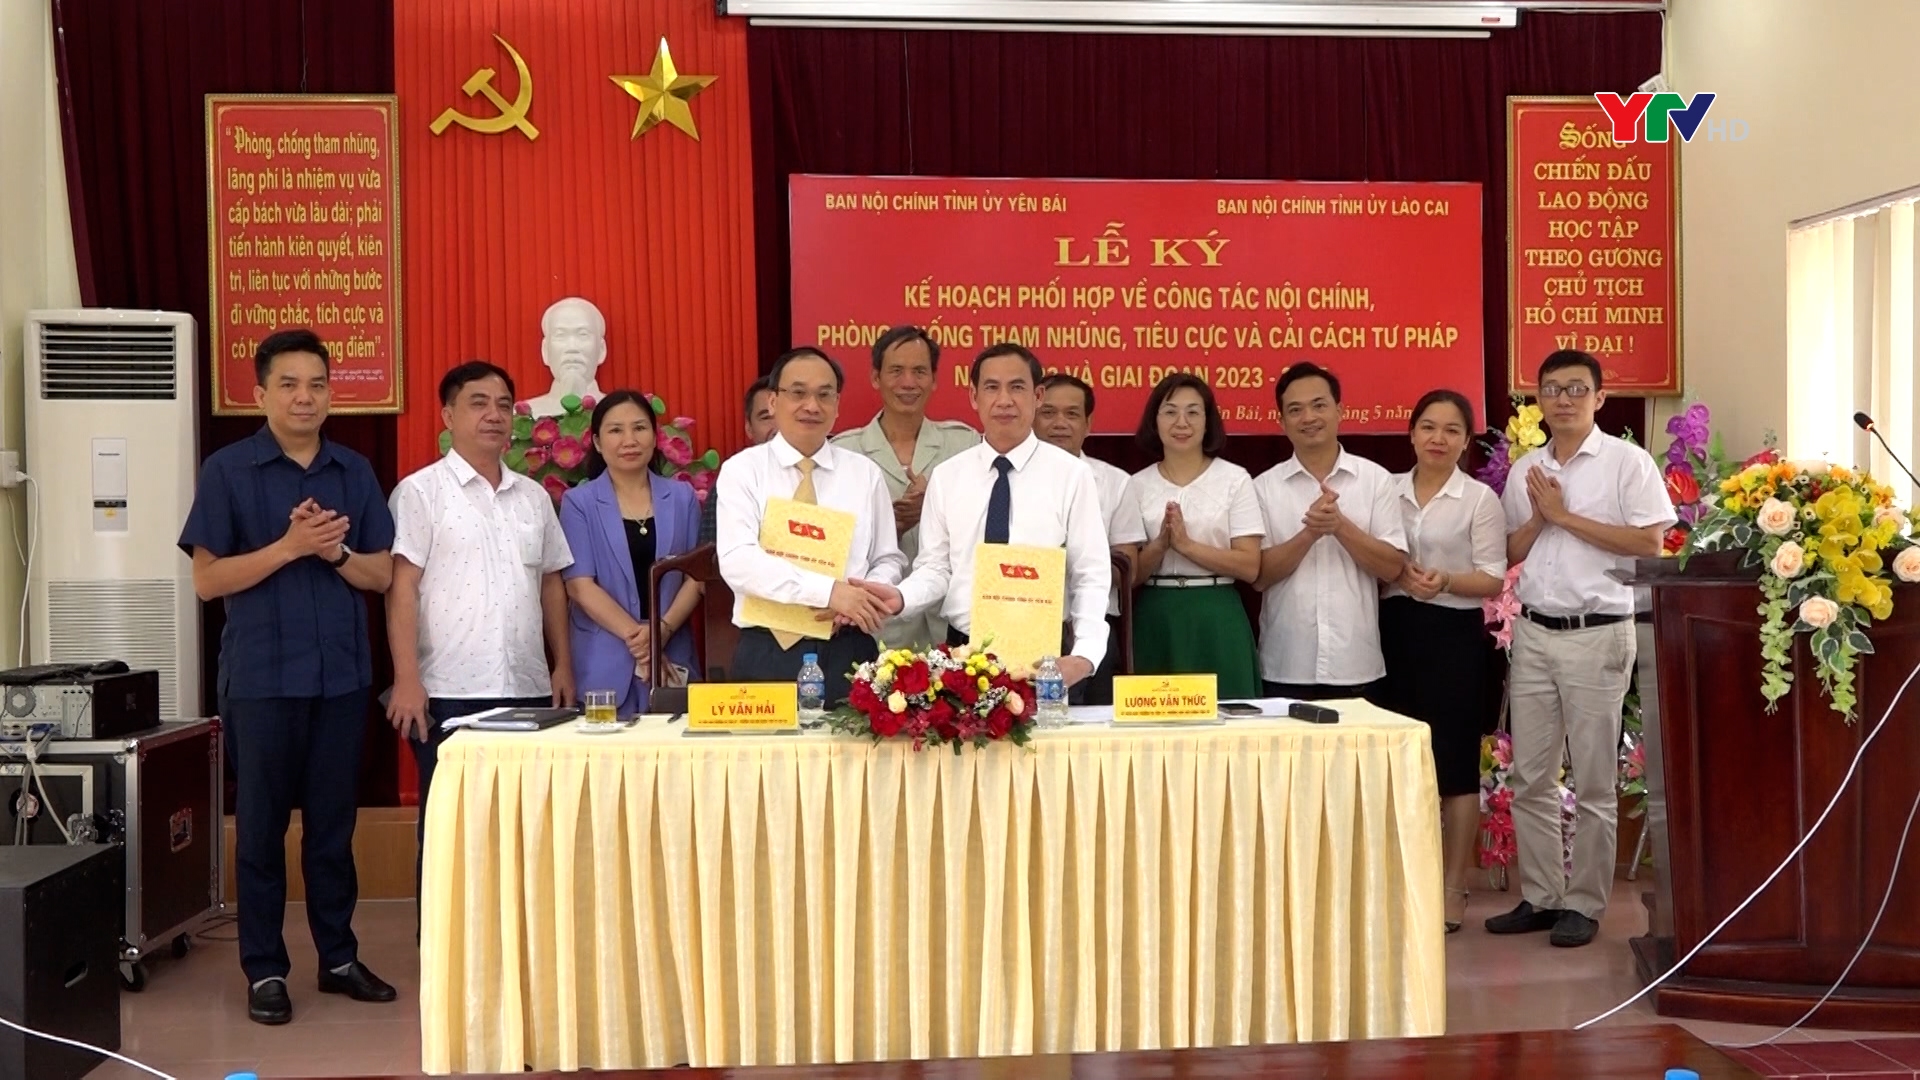 Ban Nội chính Tỉnh ủy Yên Bái và Lào Cai ký kết Kế hoạch phối hợp công tác